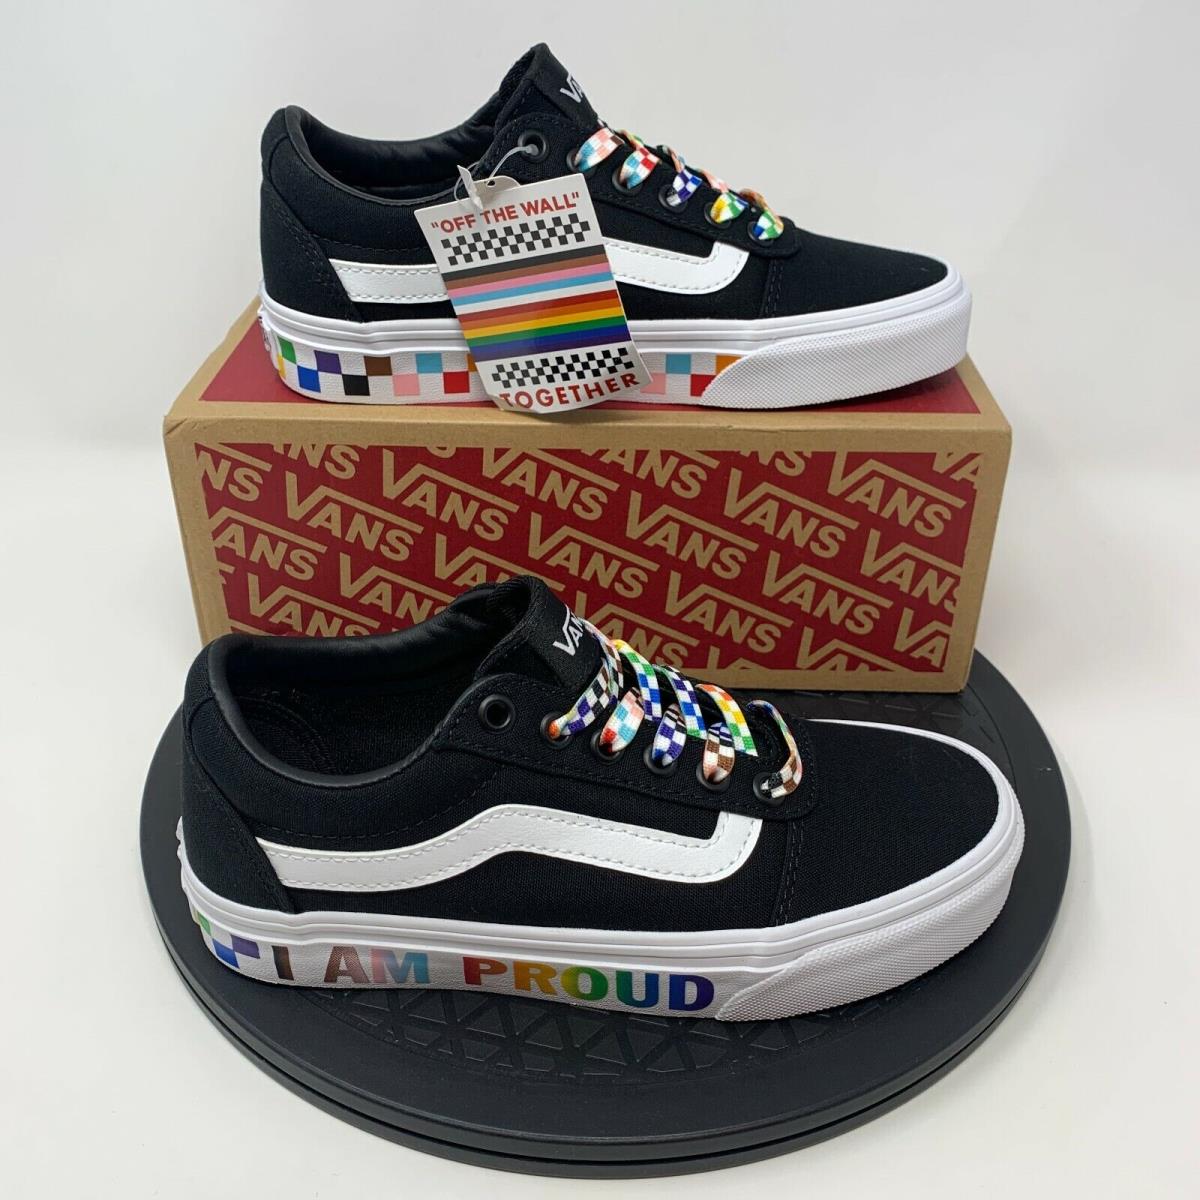 Vans Pride Skate Sneakers Womens Size 5 Shoes Black Lgbtq Rainbow Ward